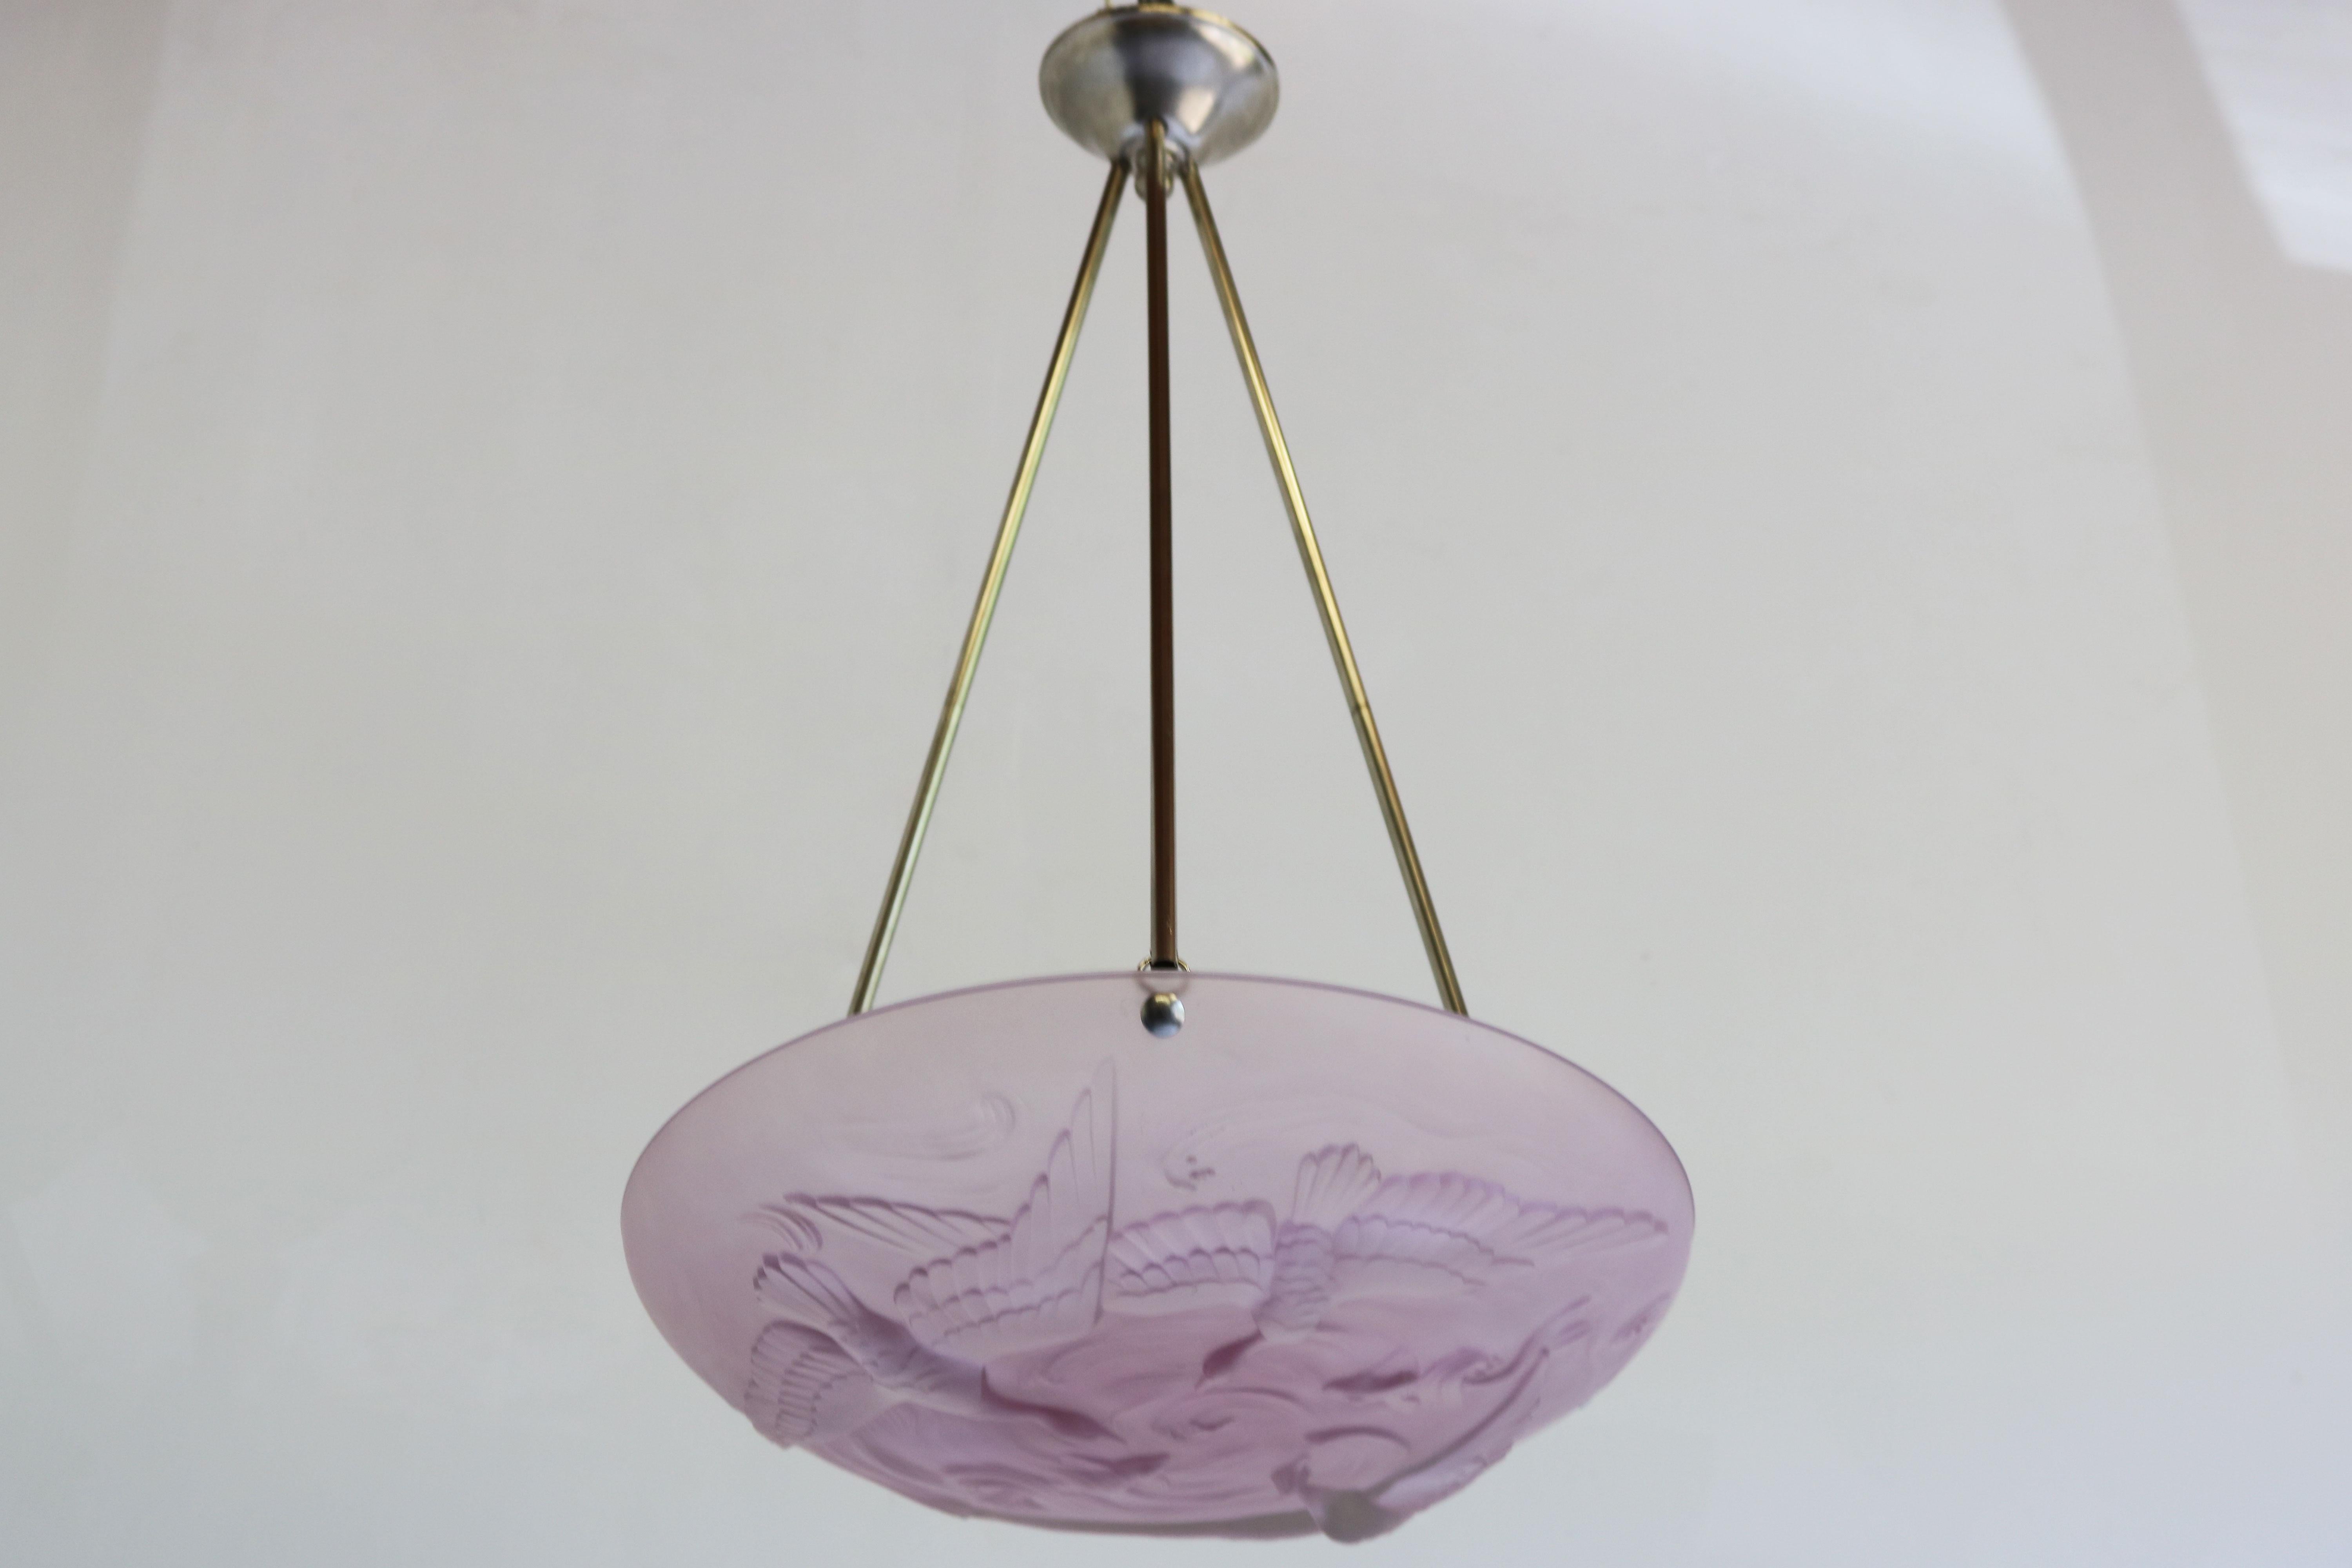 Antique French Art Nouveau / Art Deco Pendant Light by Verlys Flush Mount Pink 10